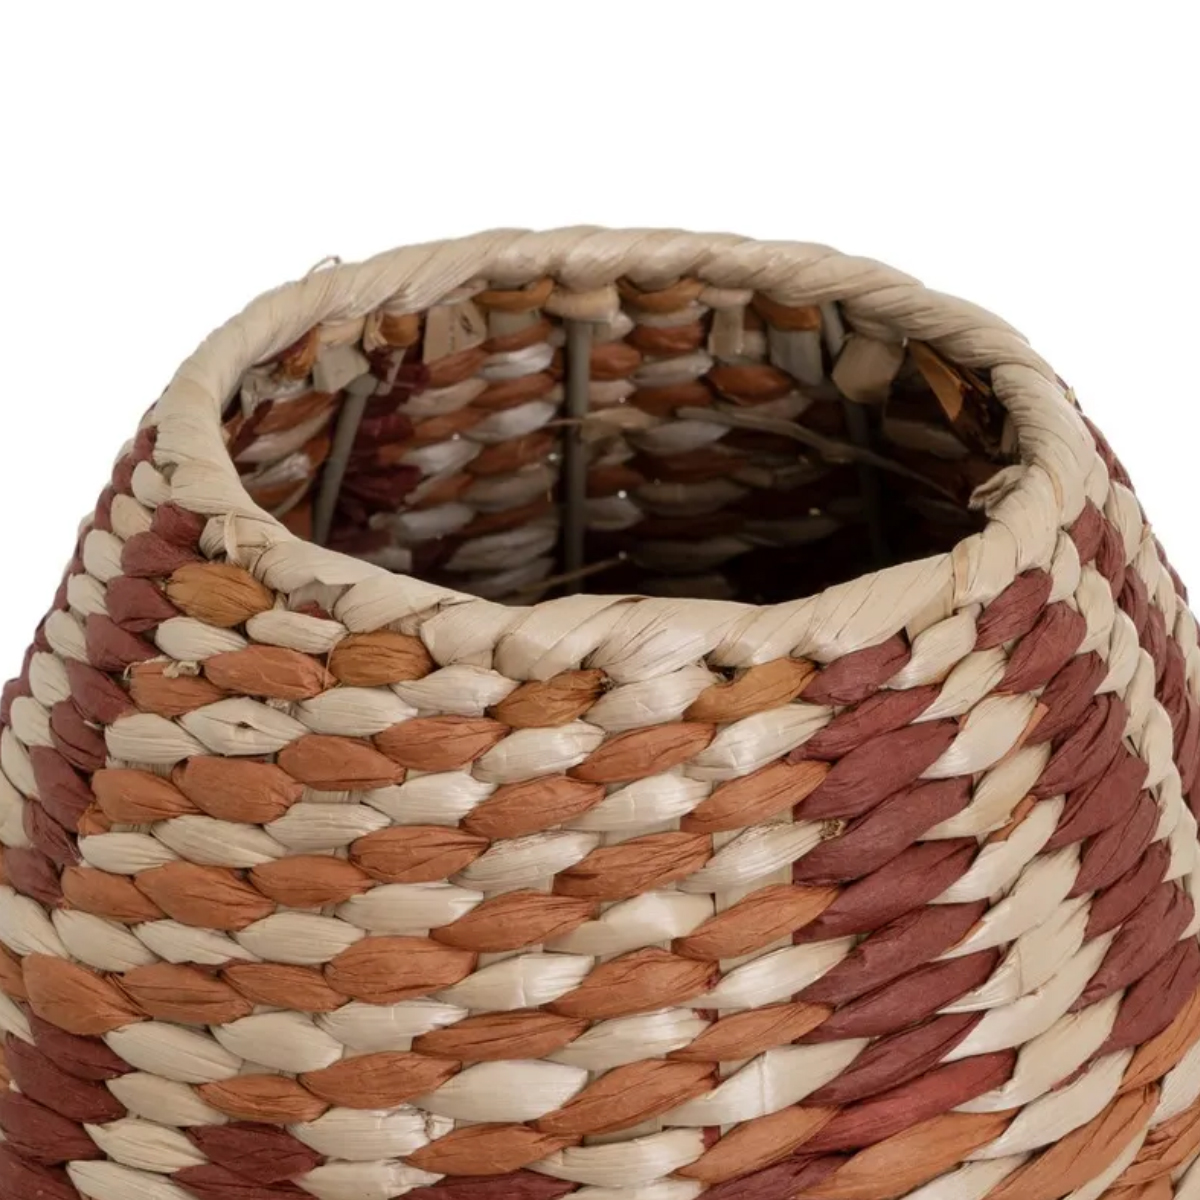 Large reed fiber vase 40 cm